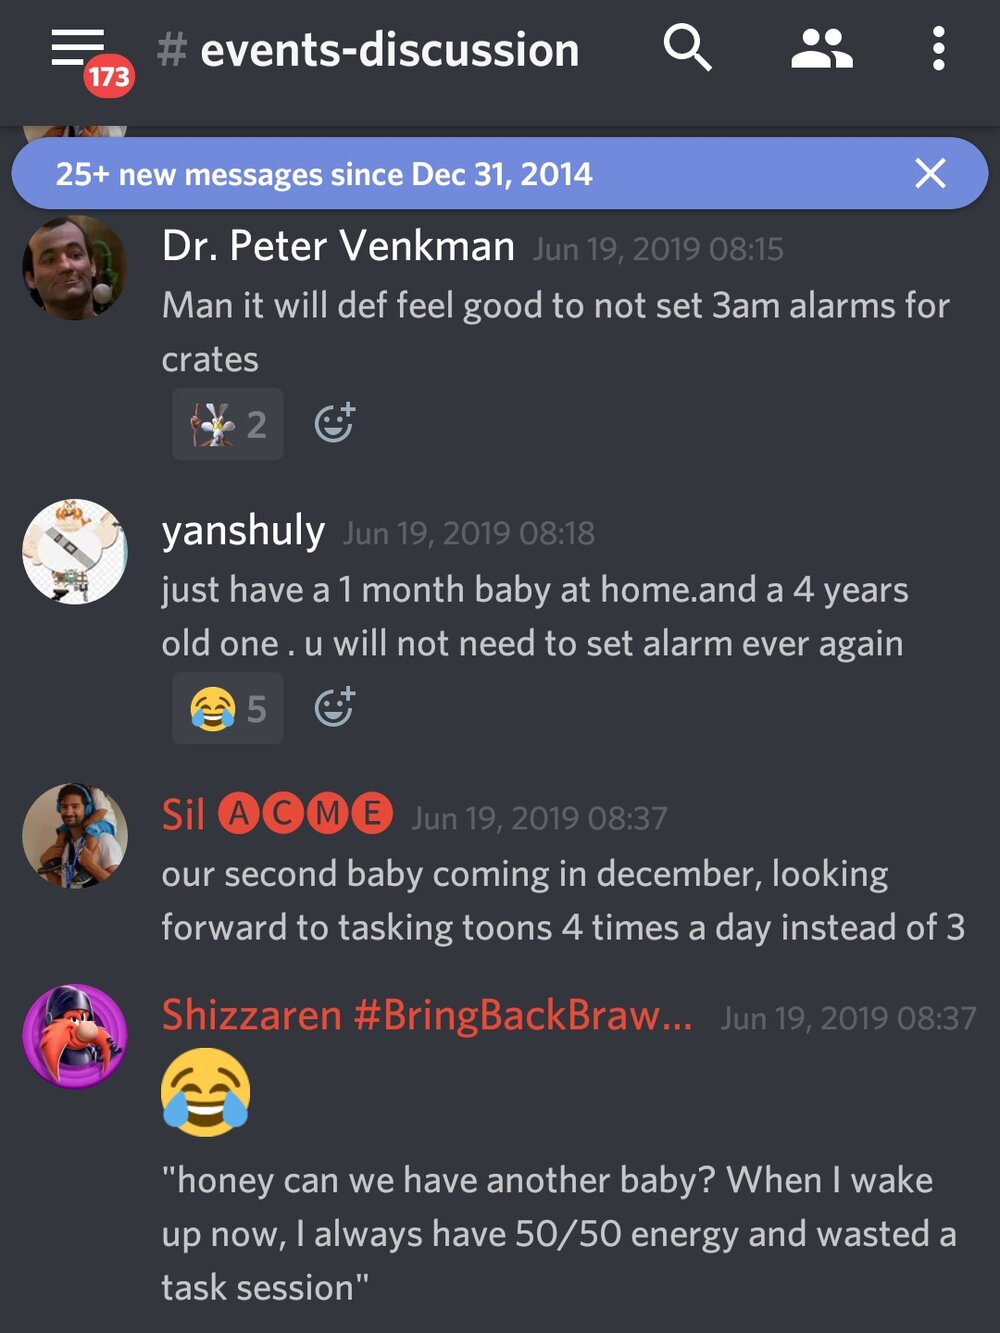  Dr. Peter Venkman: “Cara, vai ser bom não botar alarmes às 3 da manhã para caixas.”  yanshuly: “É só ter um bebê de 1 mês em casa, e outro de 4 anos. Você não vai precisar botar alarmes nunca mais.”  Sil: “Nosso segundo bebê está chegado em Dezembro